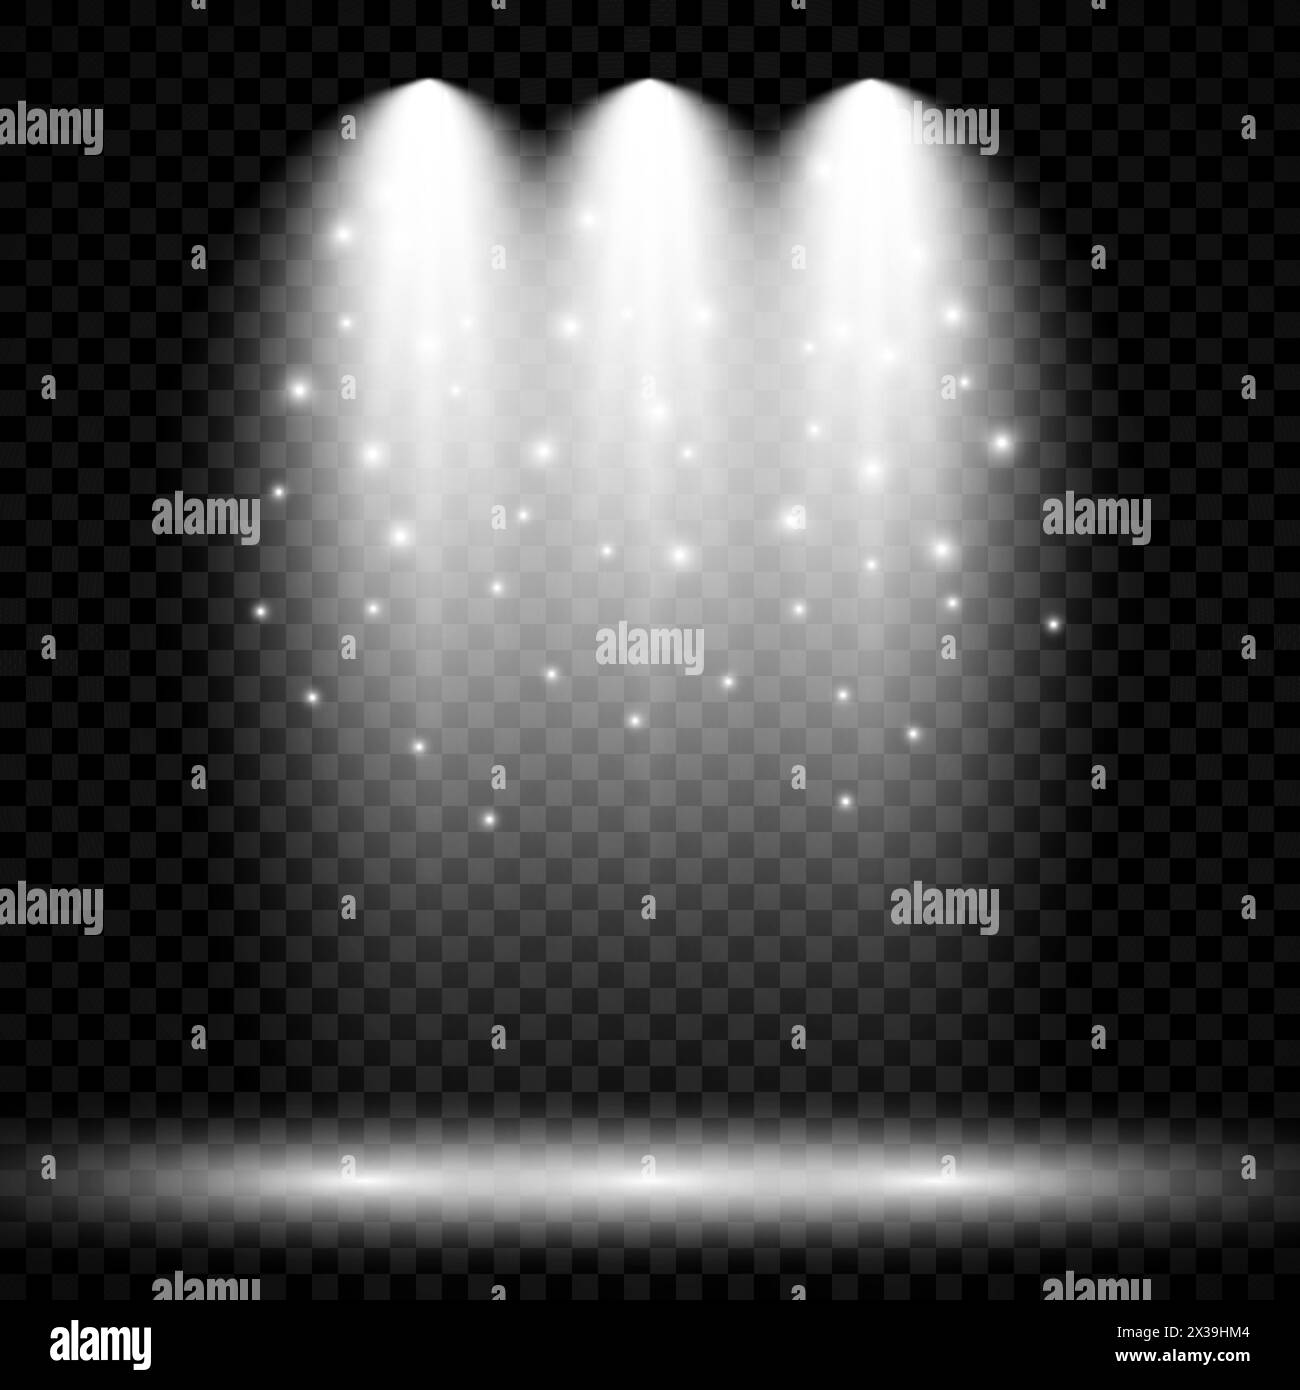 Luce bianca fredda con tre faretti. Effetti di illuminazione della scenografia su uno sfondo scuro trasparente. Illustrazione vettoriale Illustrazione Vettoriale